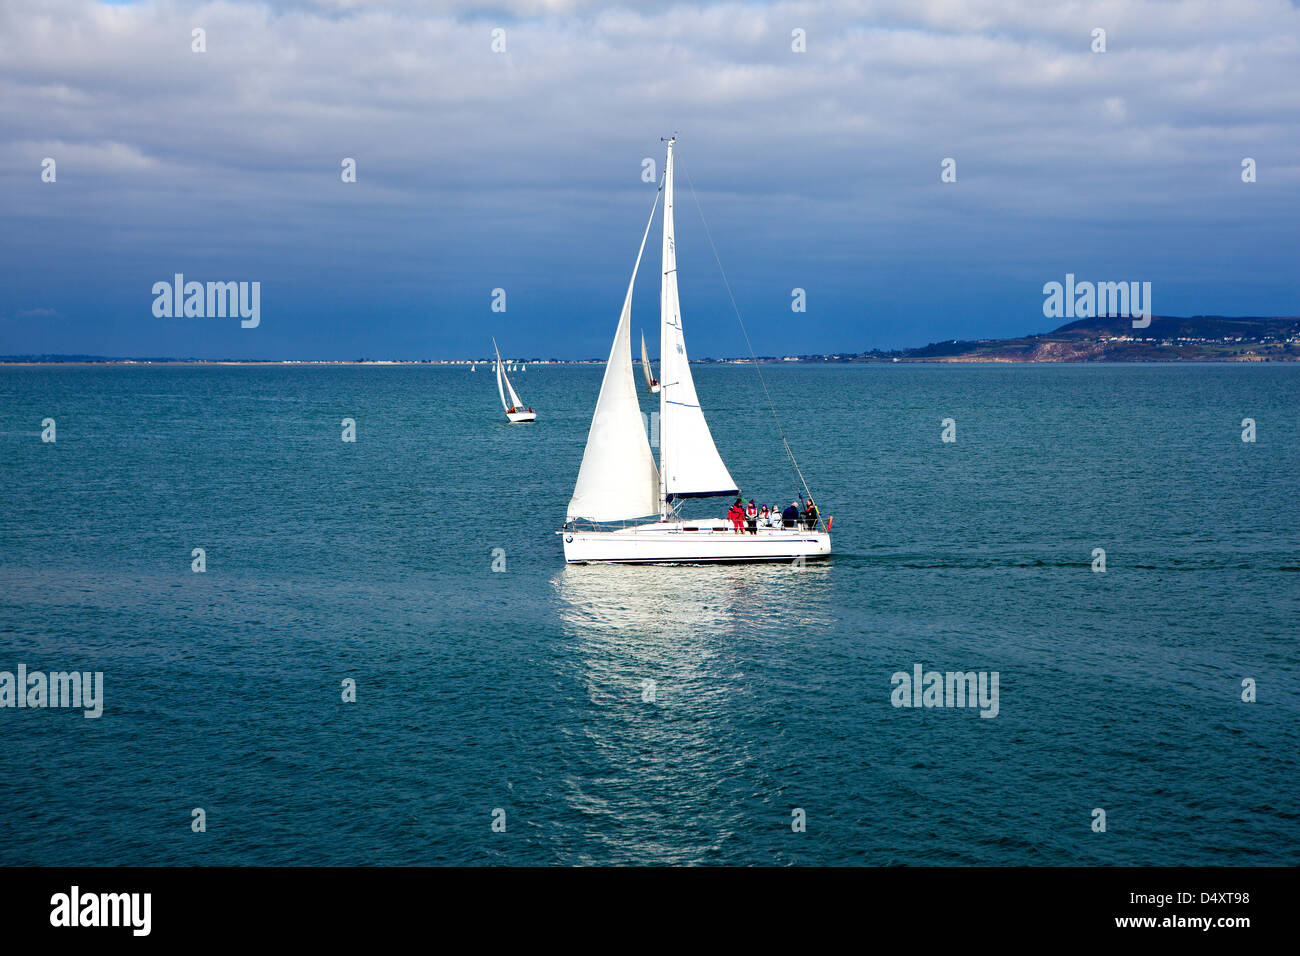 Imagen de paisaje de un yate de vela en el mar cerca de Dun Laioghaire en Dublín, Irlanda. Foto de stock